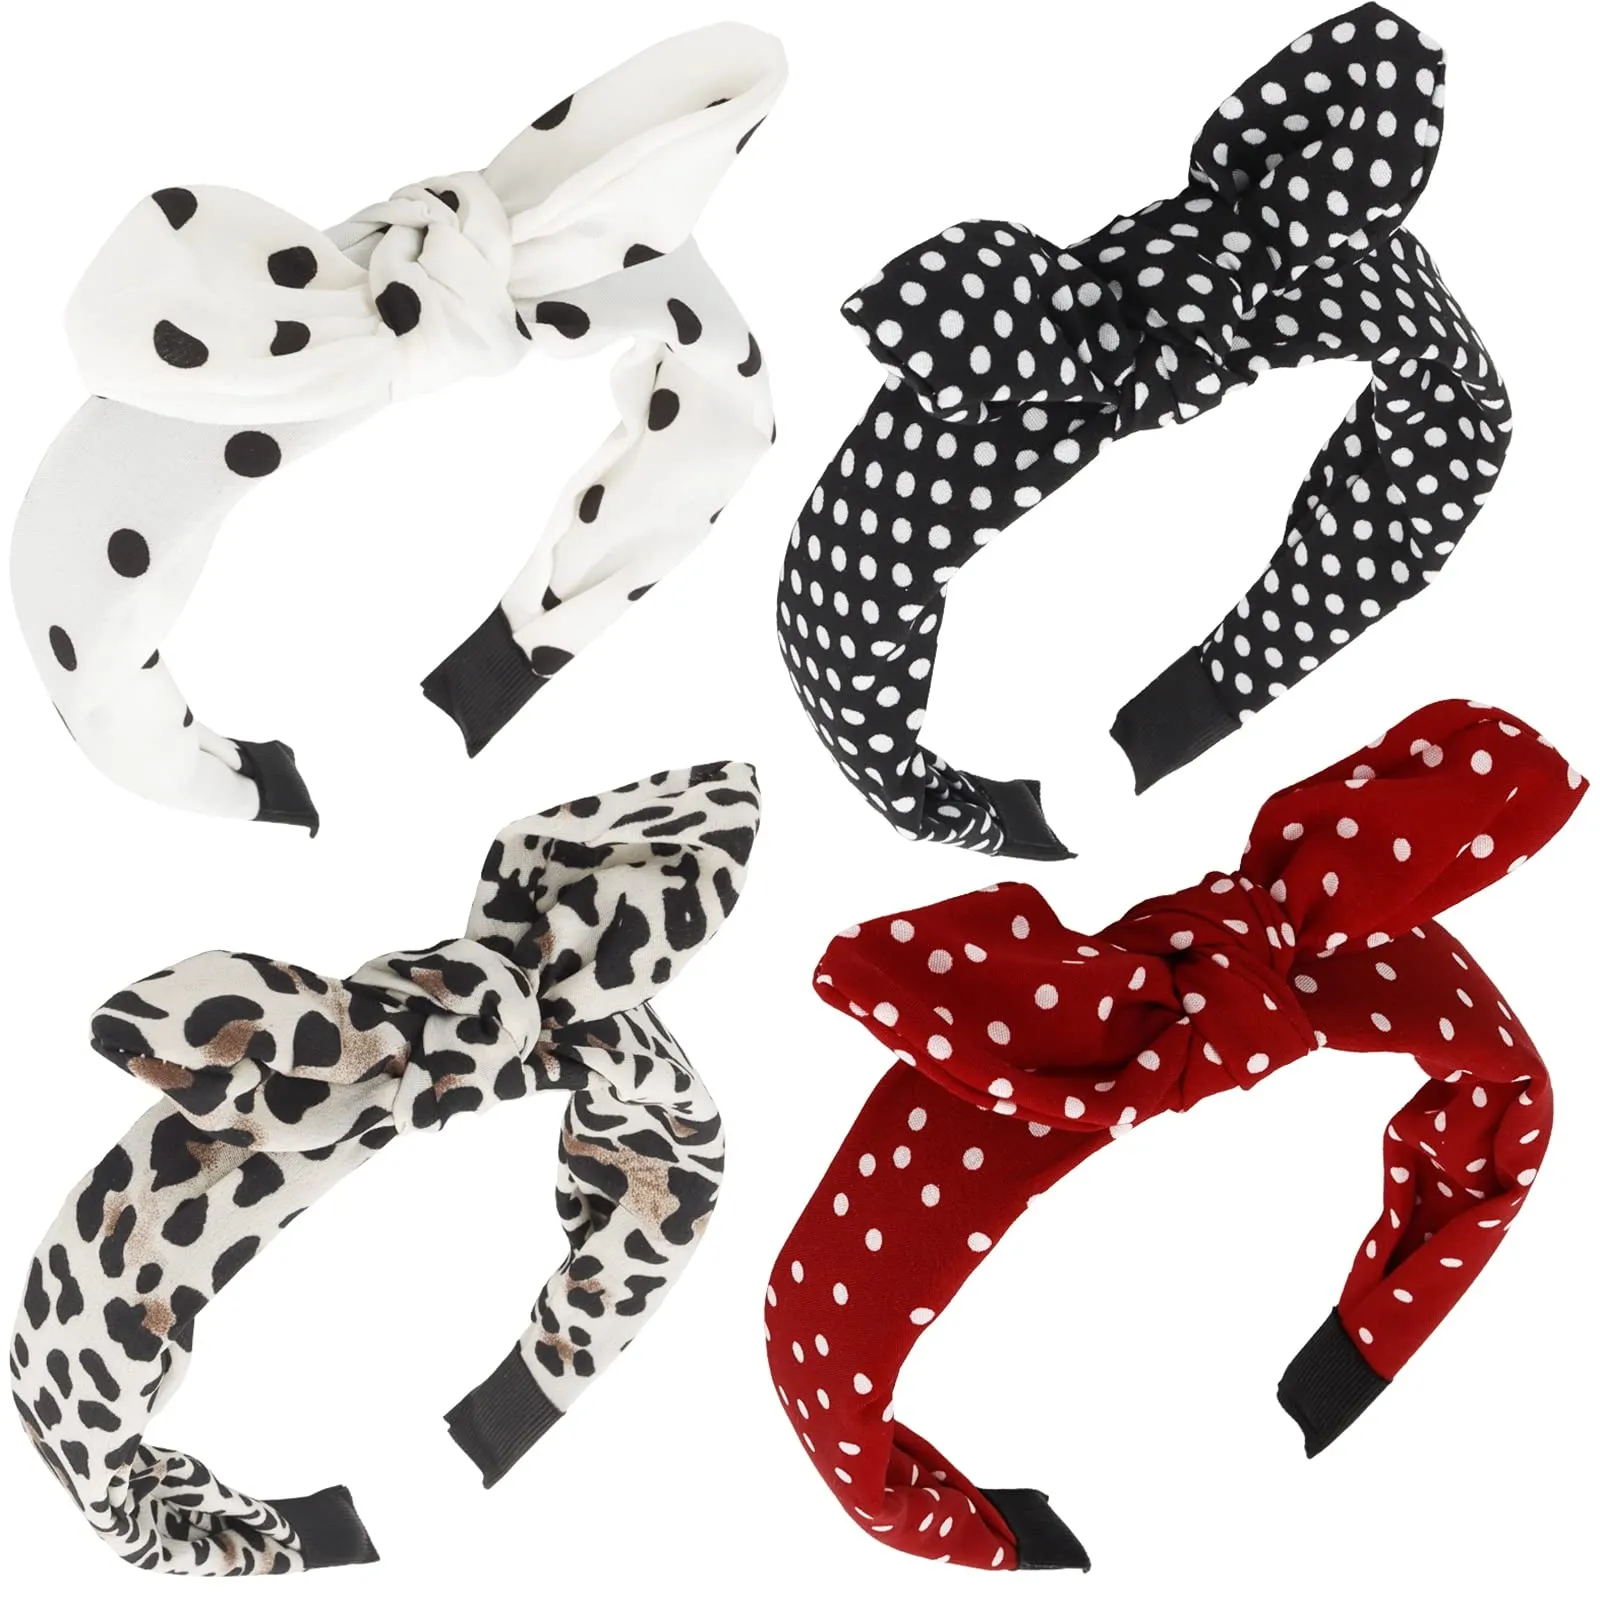 Stirnband Schleife Stirnbänder Für Frauen Mädchen Niedlich Geknotet Mode Leopard Polka Dot Bequemes Tuch Rot Weiß Schwarz Haarschleifen Ha Lulubaby Amlqc